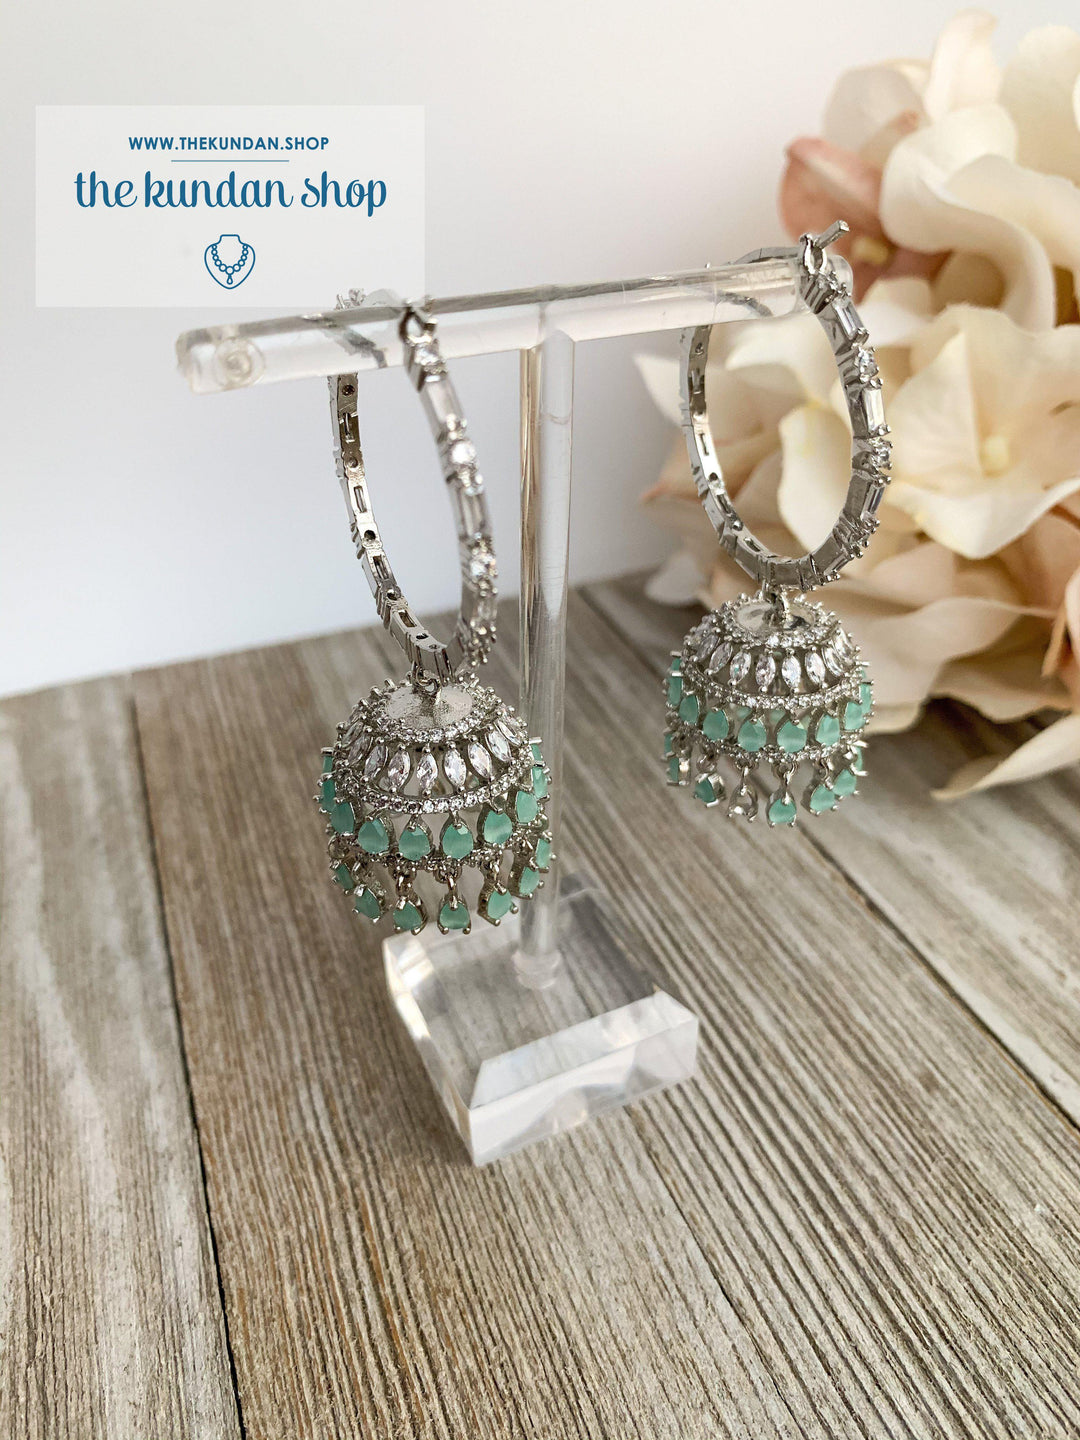 Bliss Baalis in Silver & Mint Earrings THE KUNDAN SHOP Style 2 